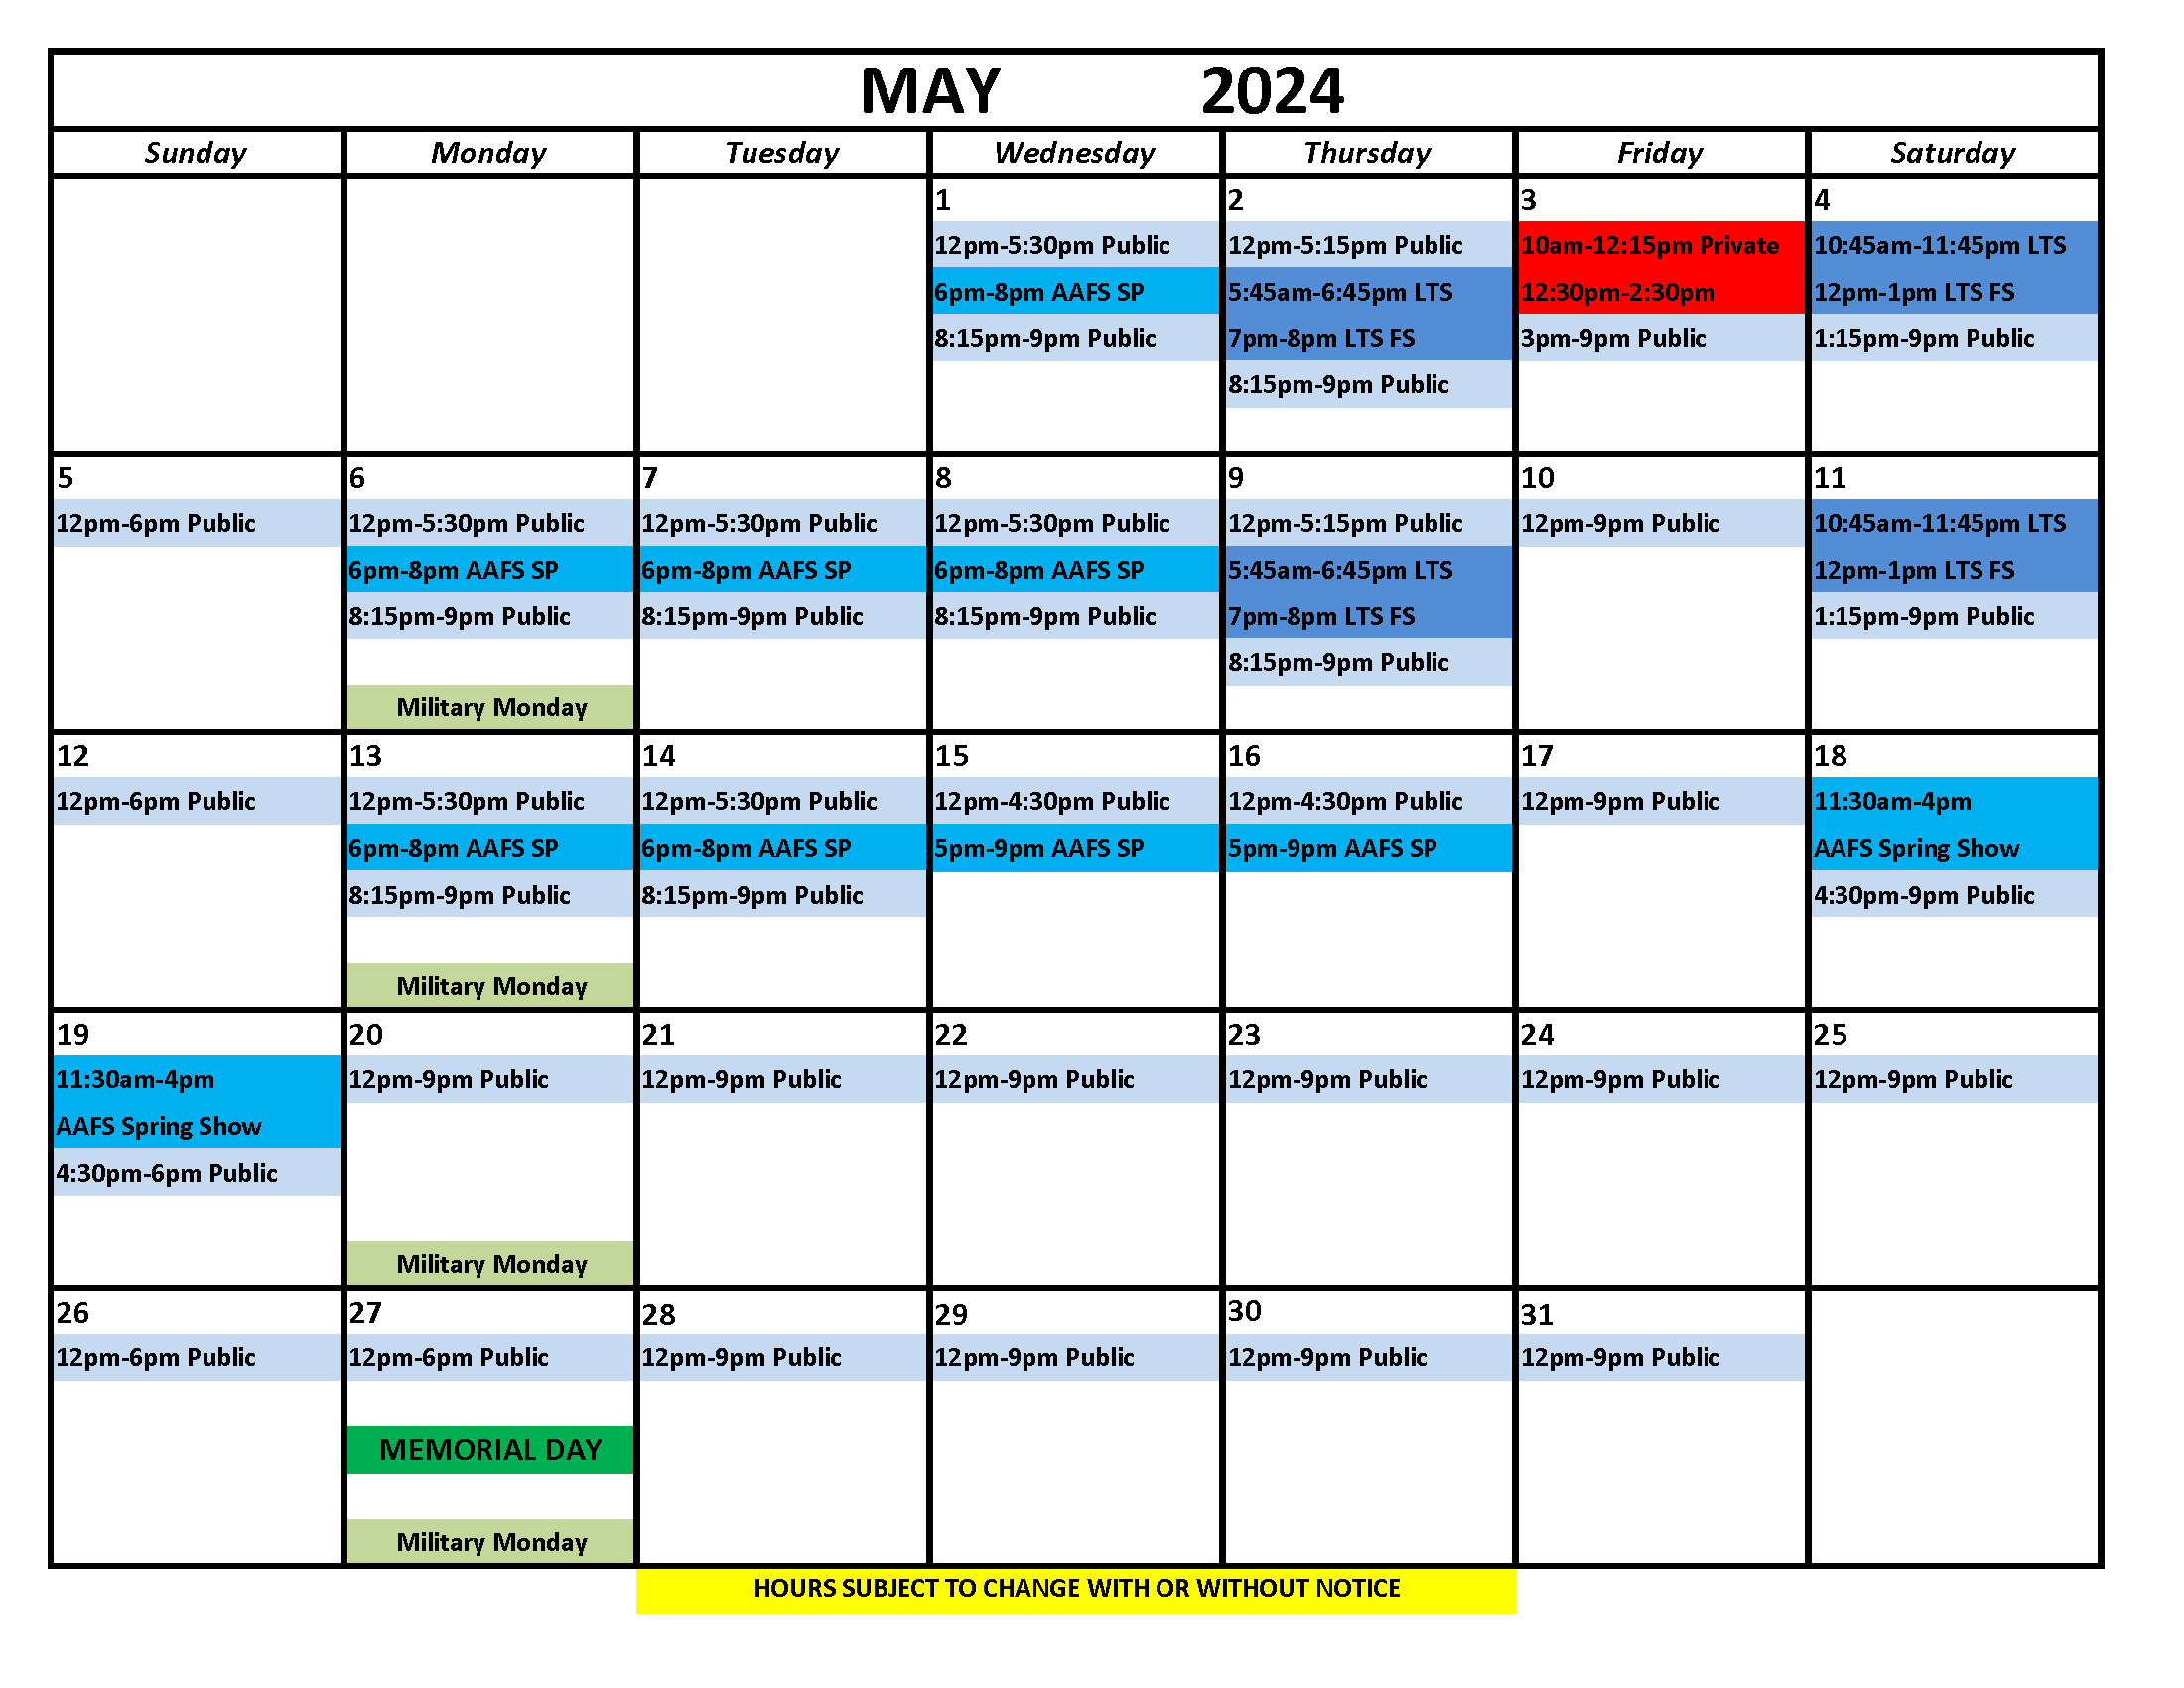 Ice Chalet Schedule